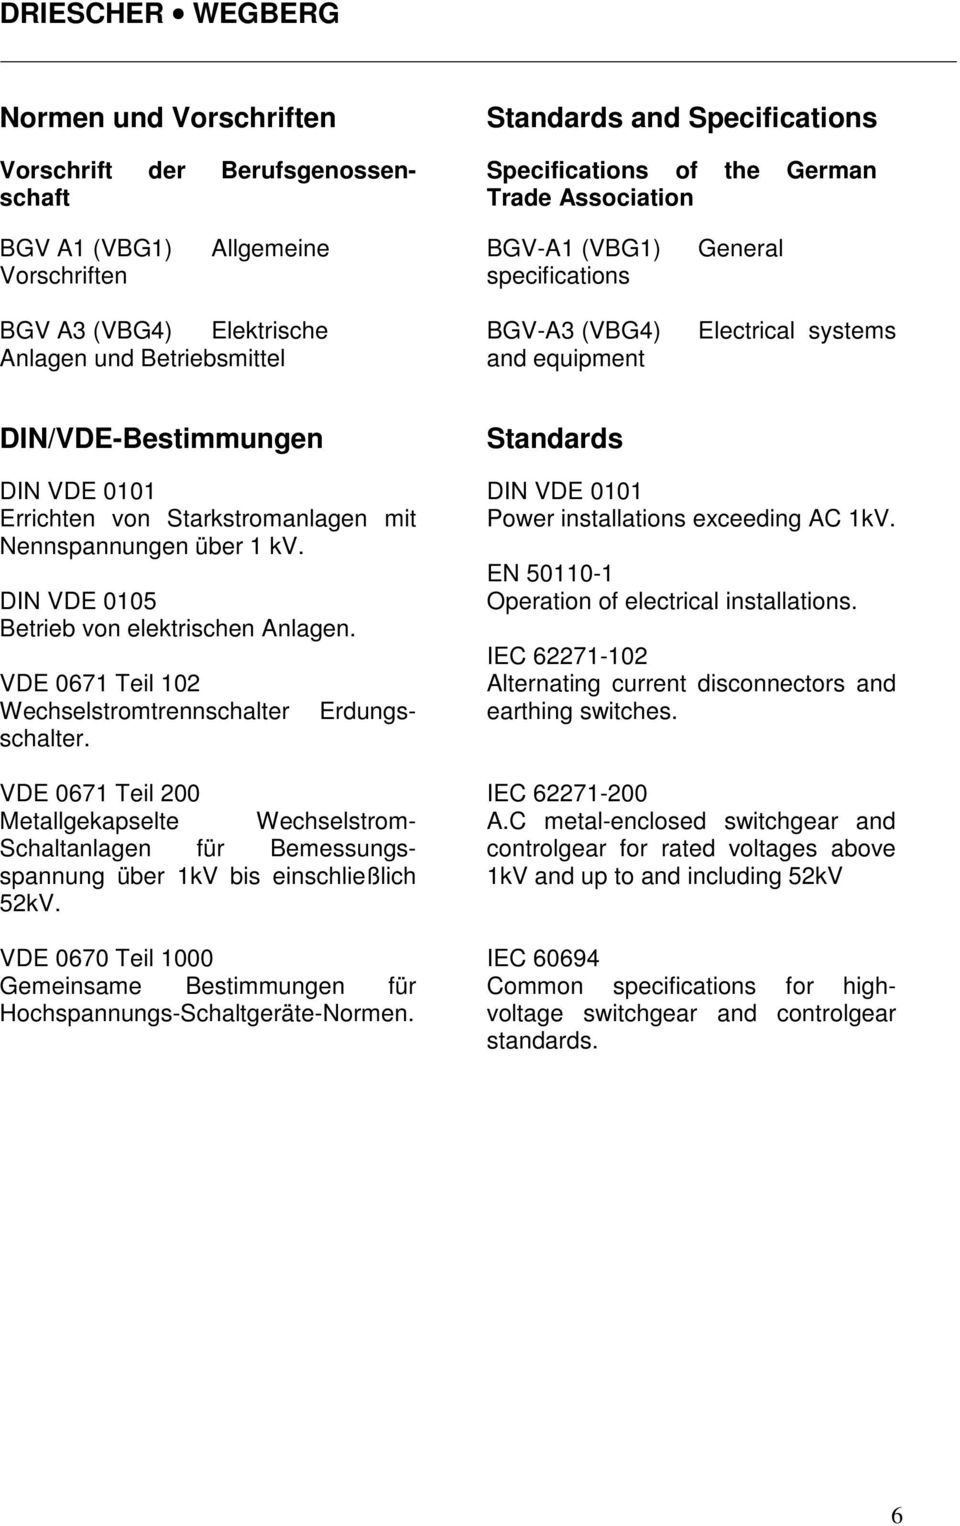 DIN VDE 0105 Betrieb von elektrischen Anlagen. Vorschrift der Berufsgenossenschaft Erdungs- VDE 0671 Teil 102 Wechselstromtrennschalter schalter.